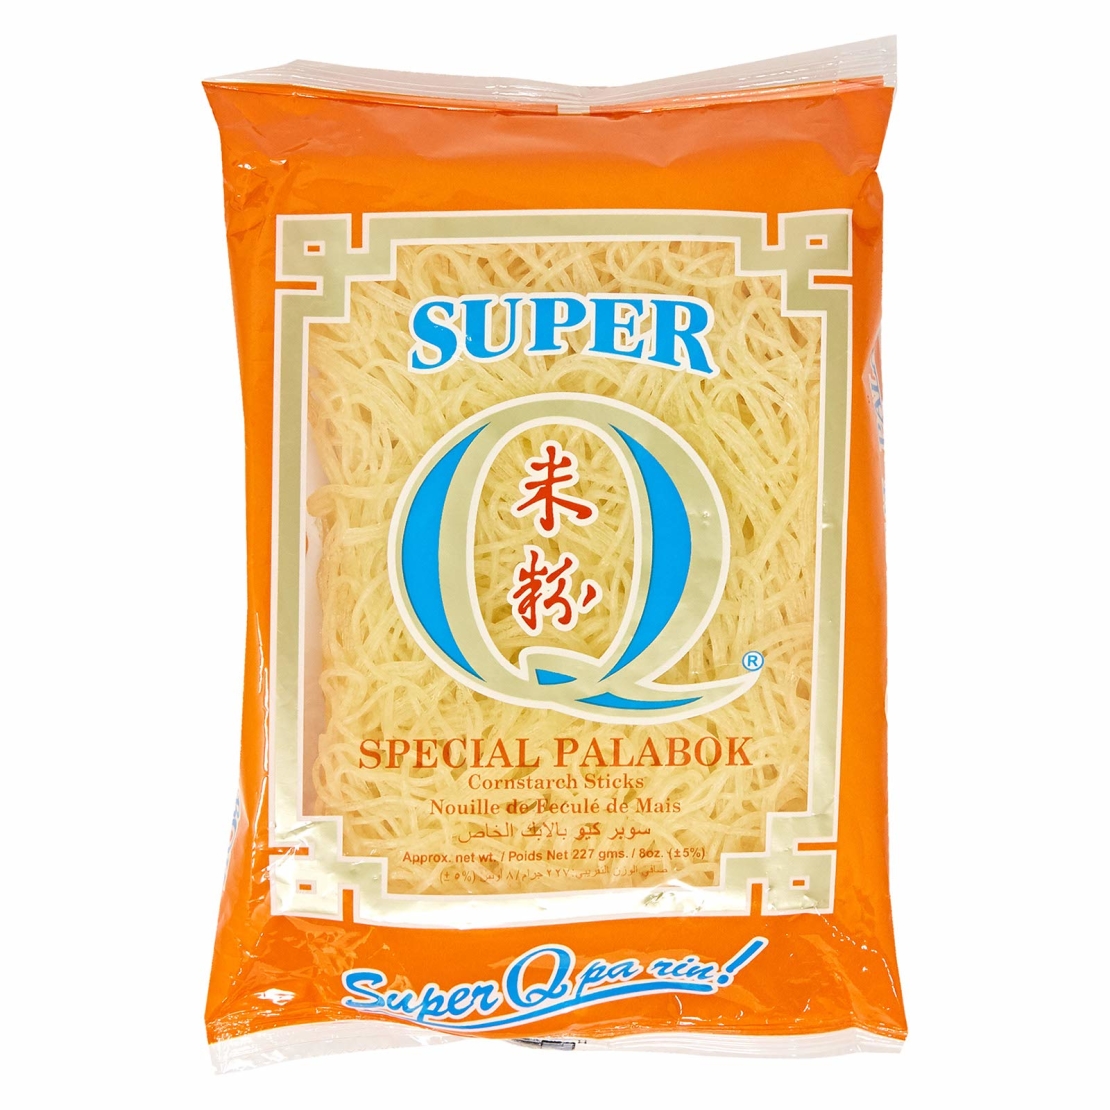 Super Q - Special Palabok